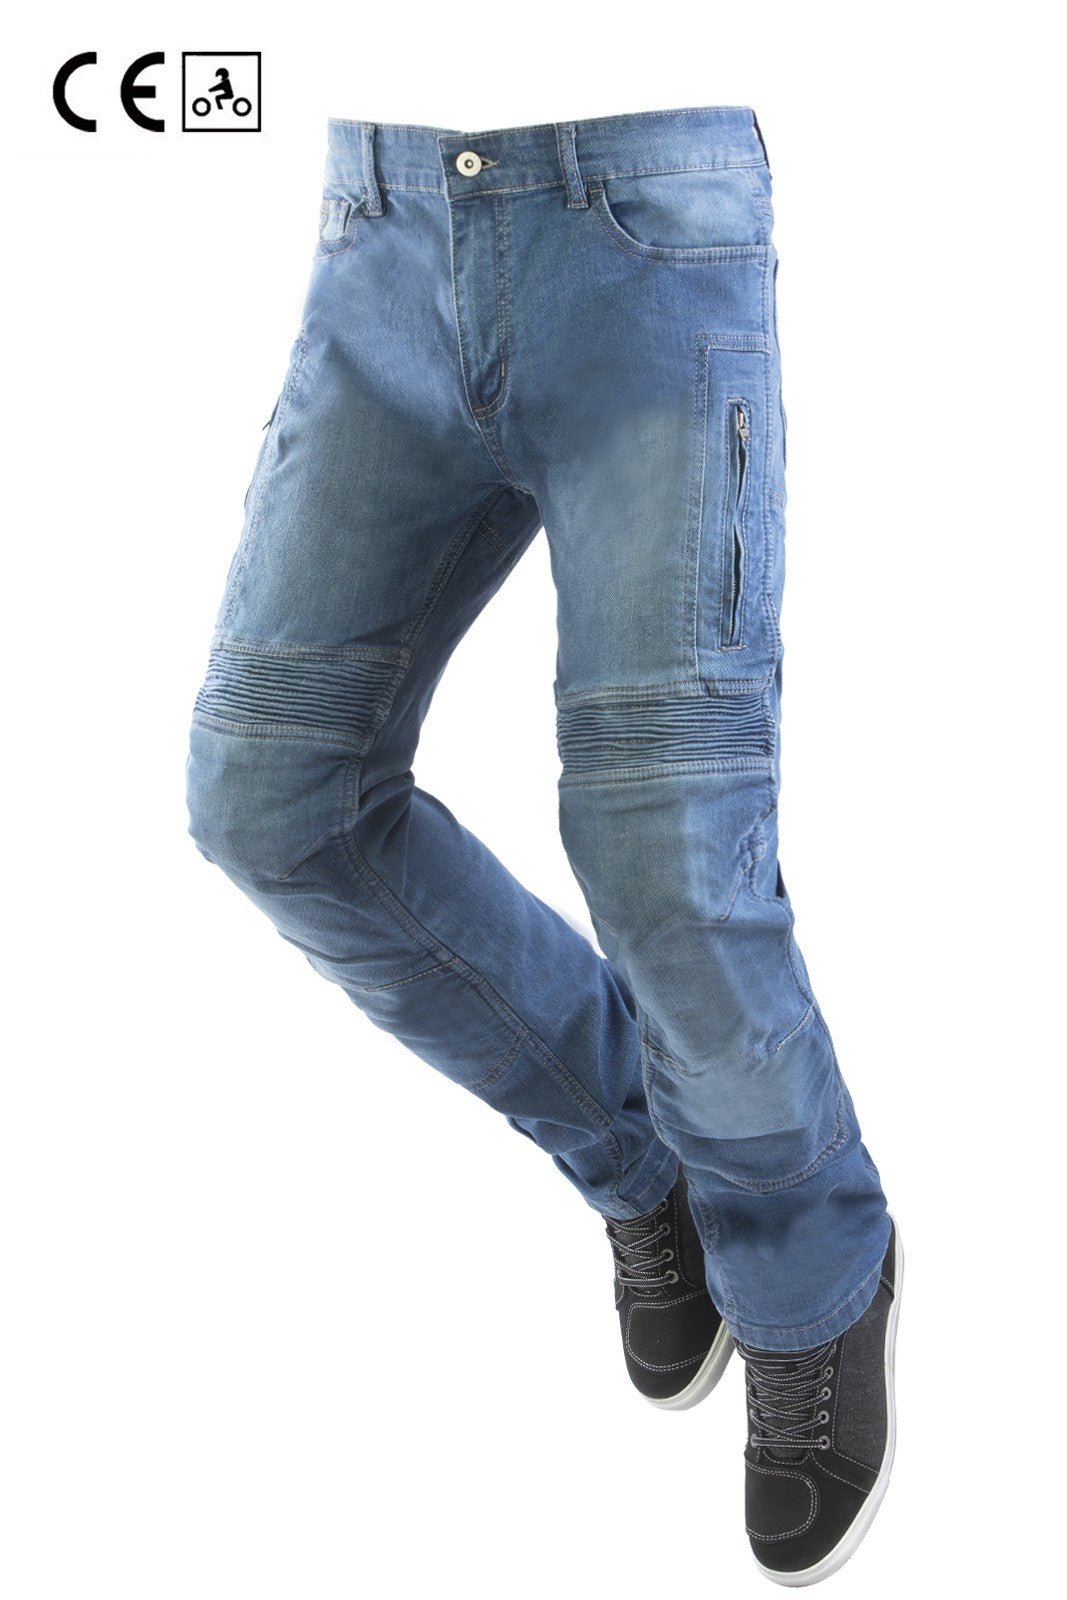 Juicy Trendz® Jeans Moto Uomo Pantaloni Moto Uomo con Protezioni Jeans Moto  Uomo Fodera in aramide